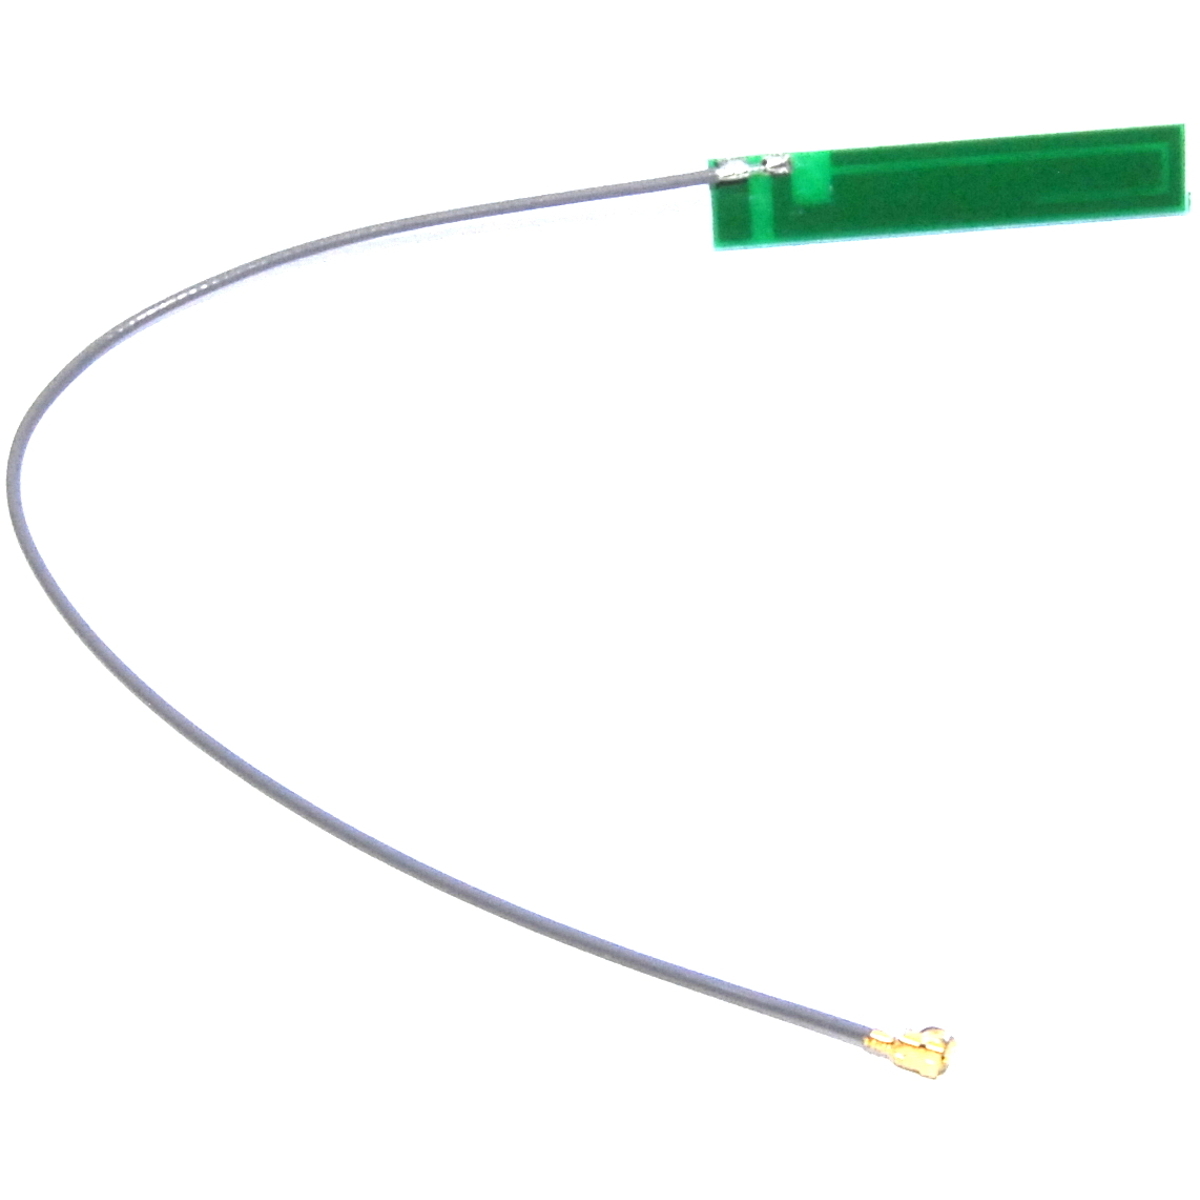 3 Stück Antenne 15 cm Kabel Grün Vergleichsbild 1